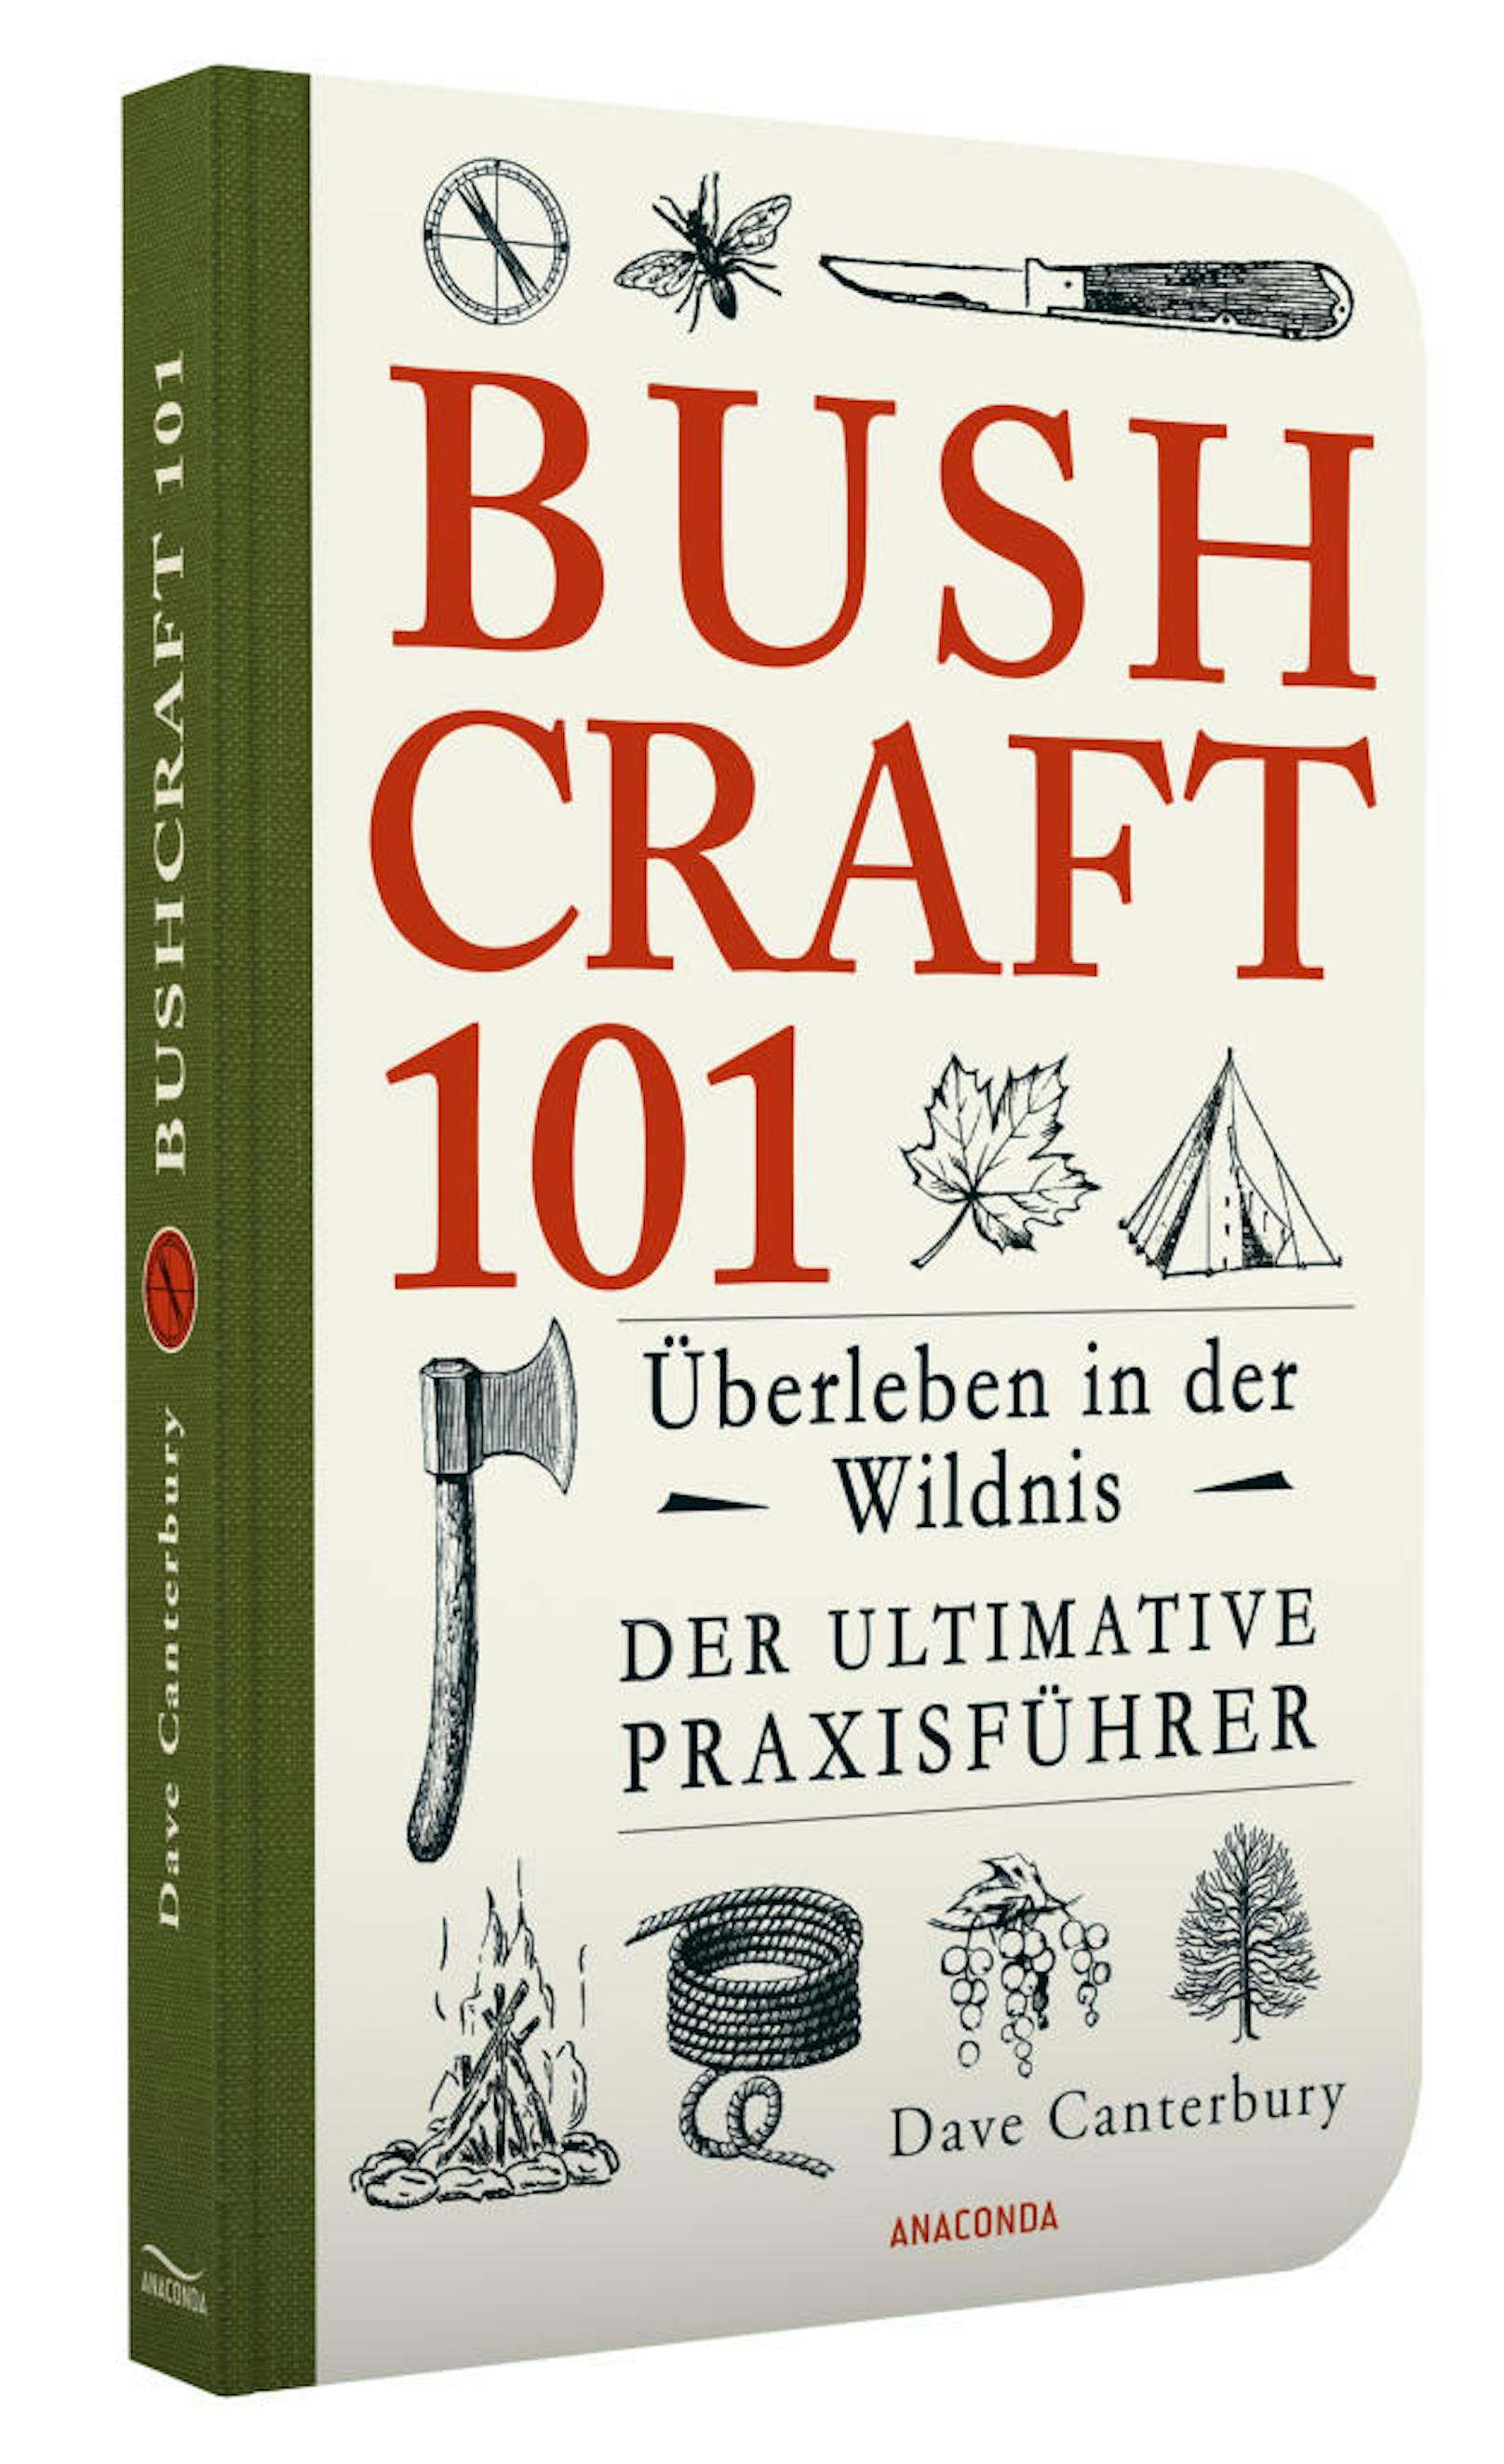 "Bushcraft 101"